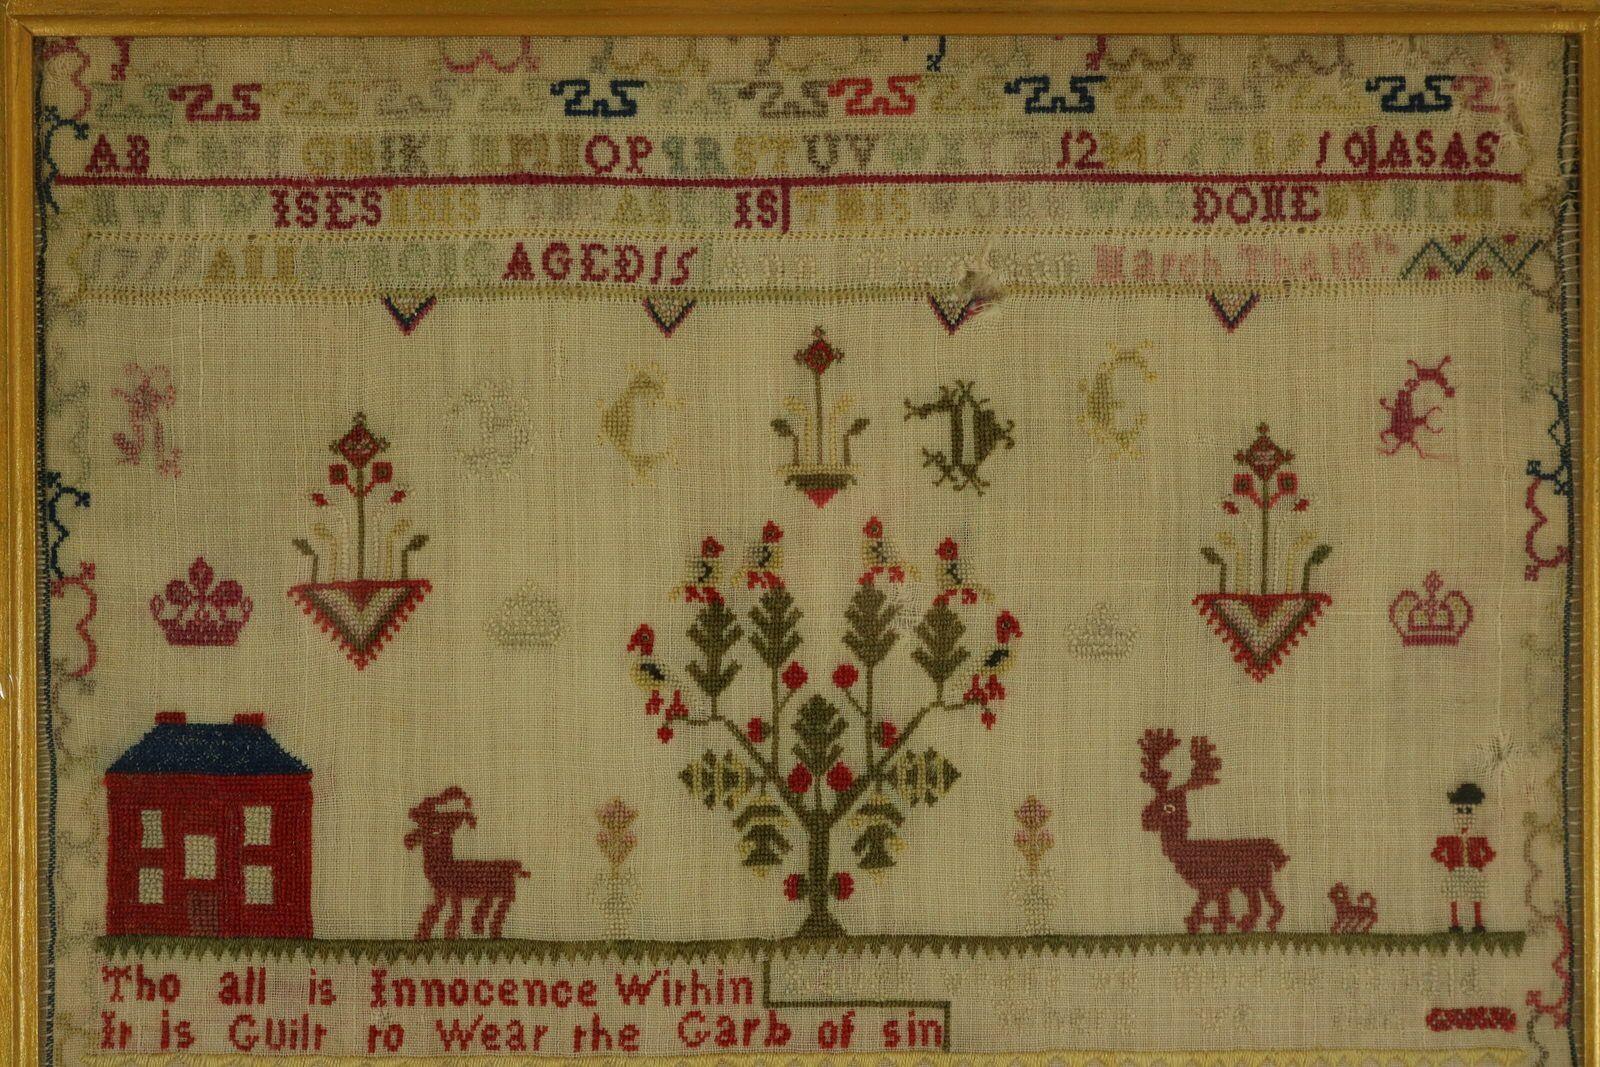 Sampler géorgien, 1799, par Anne Strong. Le sampler est réalisé en laine fine et en soie sur un fond de lin, au point de croix. Bordure curviligne inhabituelle. Couleurs : rouge, jaune, brun clair, rose, vert et bleu. Alphabets de A à Z en